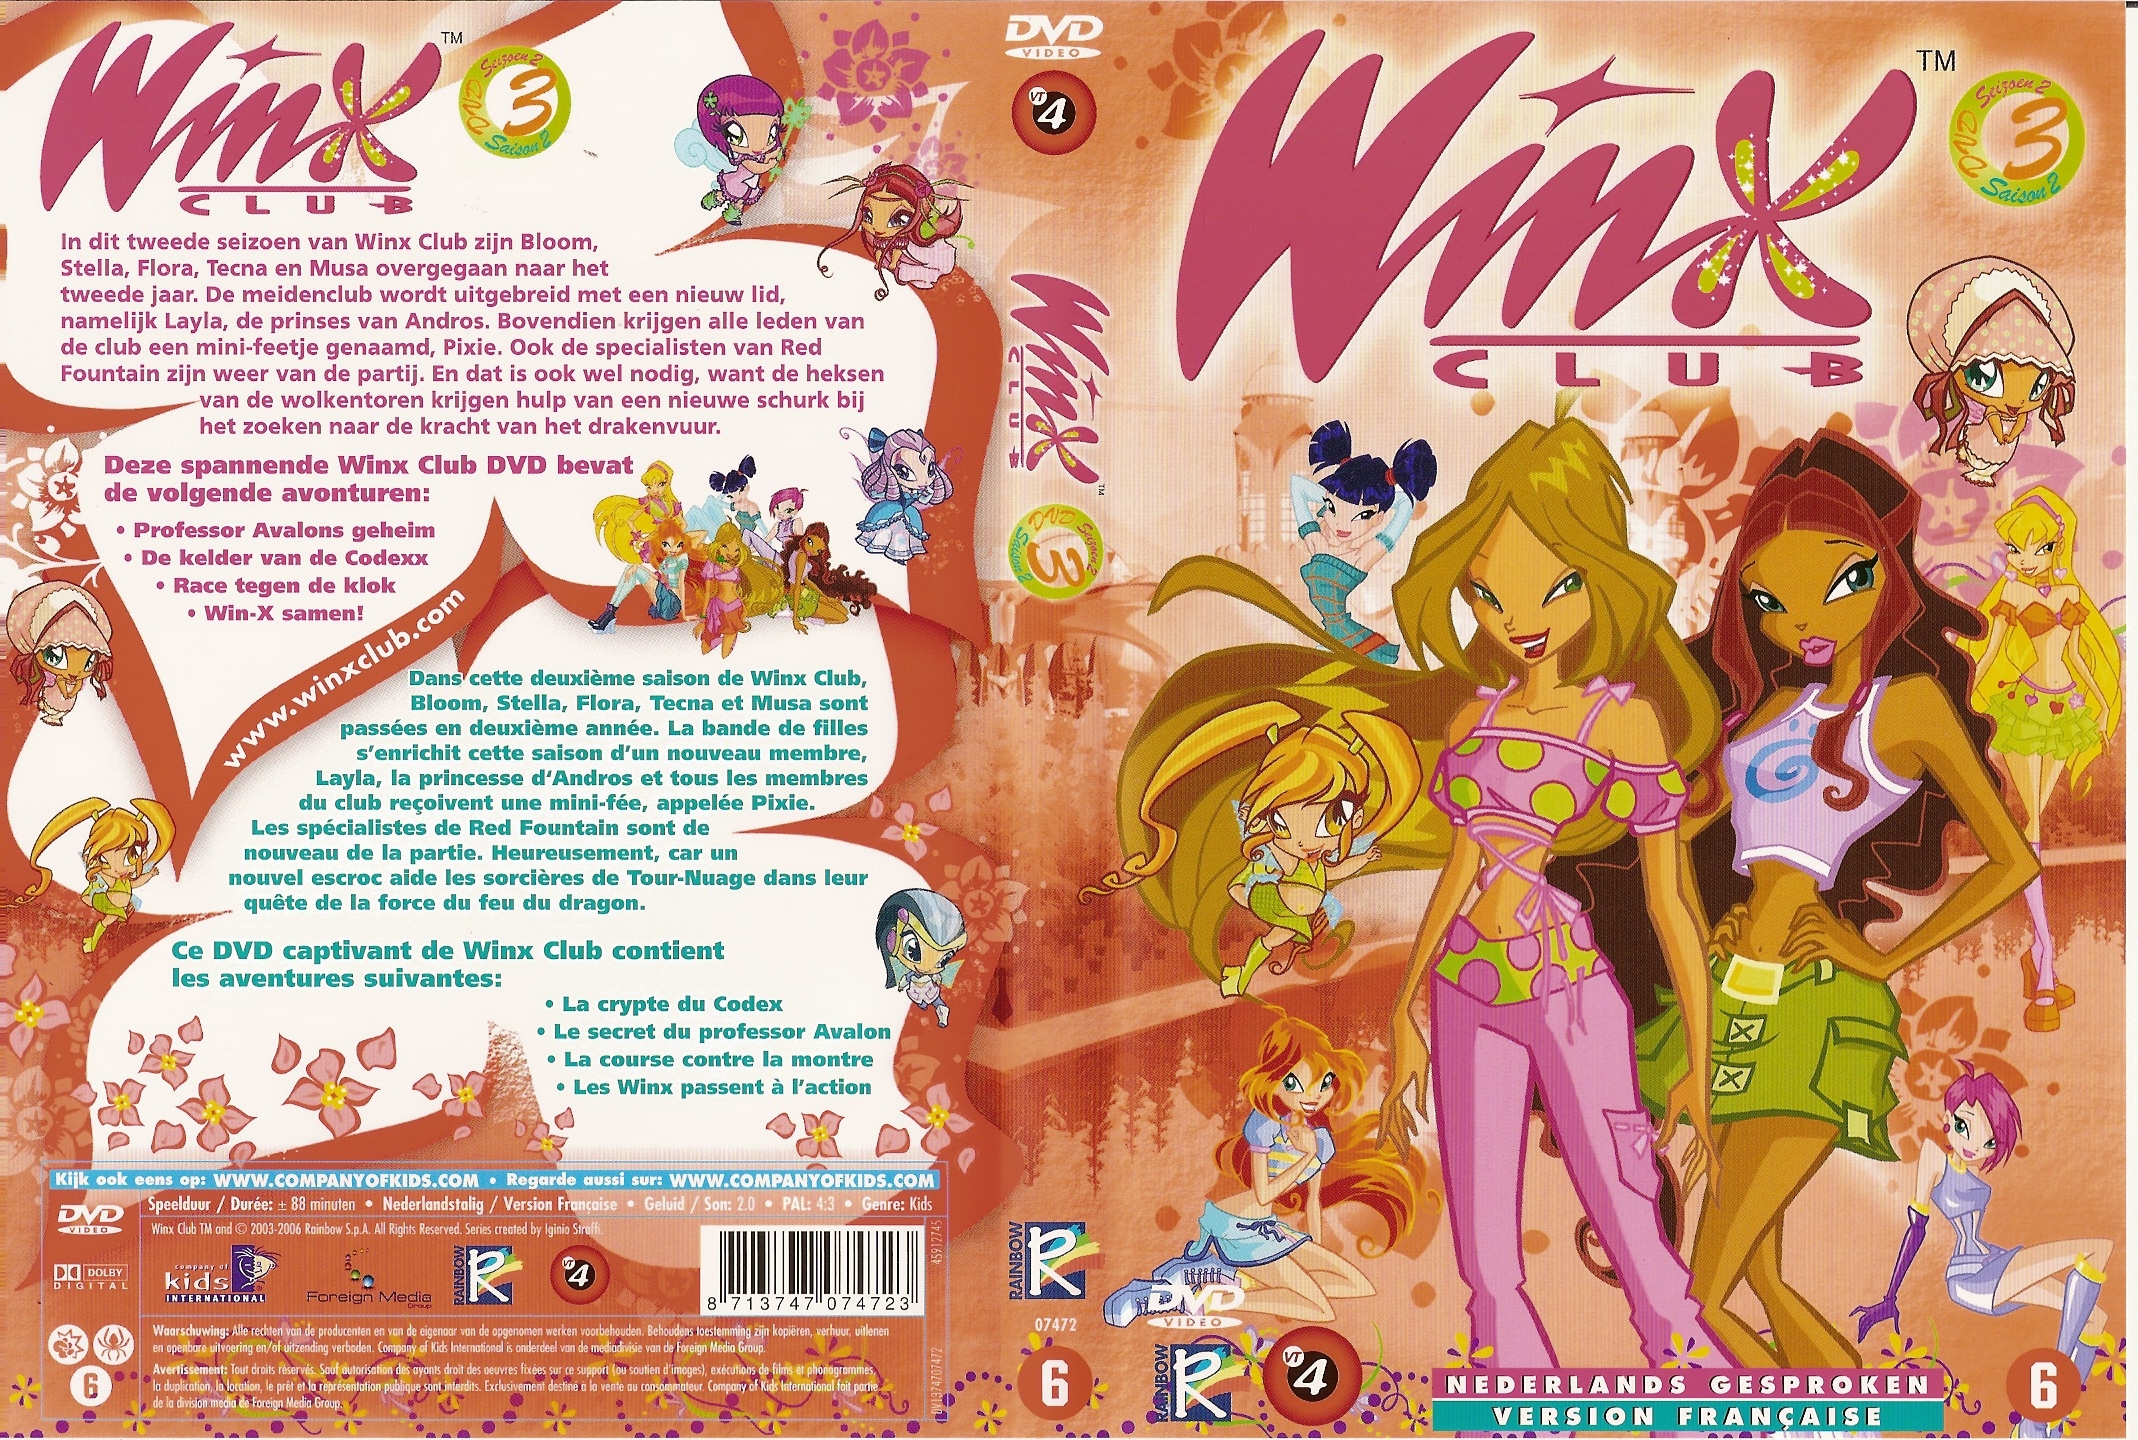 Jaquette DVD Winx Saison 2 vol 3